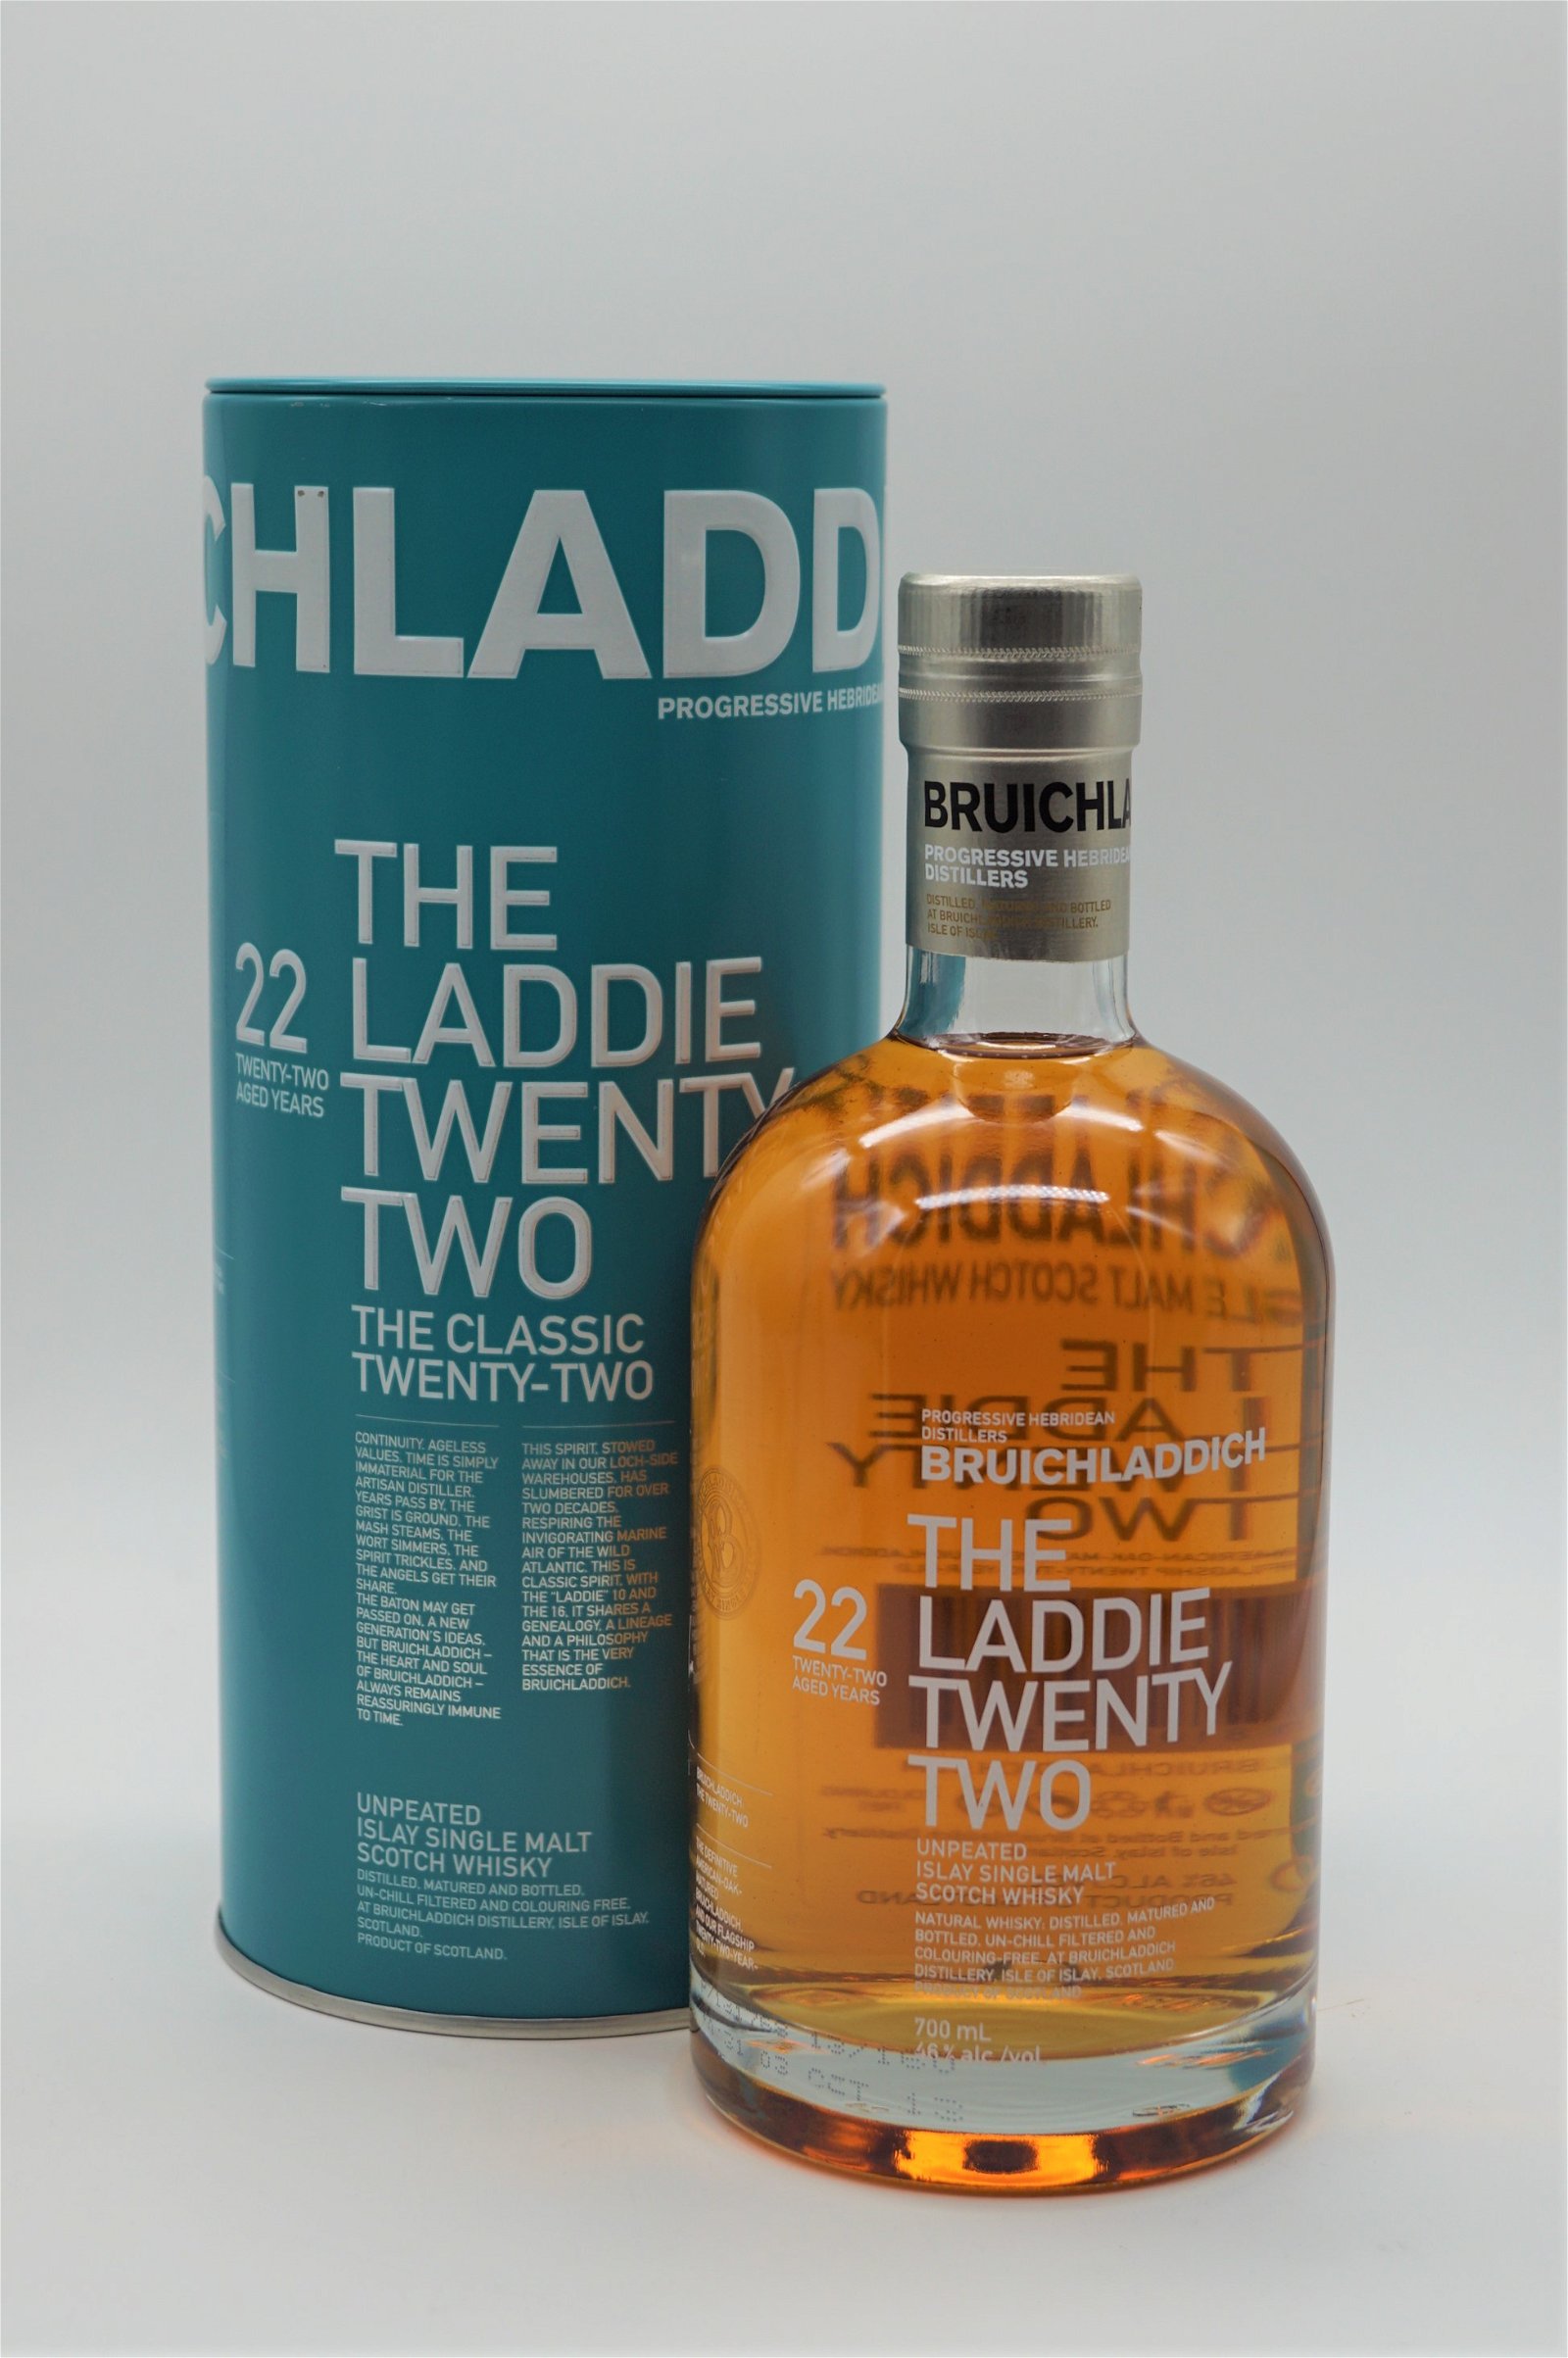 Bruichladdich The Laddie Twenty Two 22 Jahre Single Malt Scotch